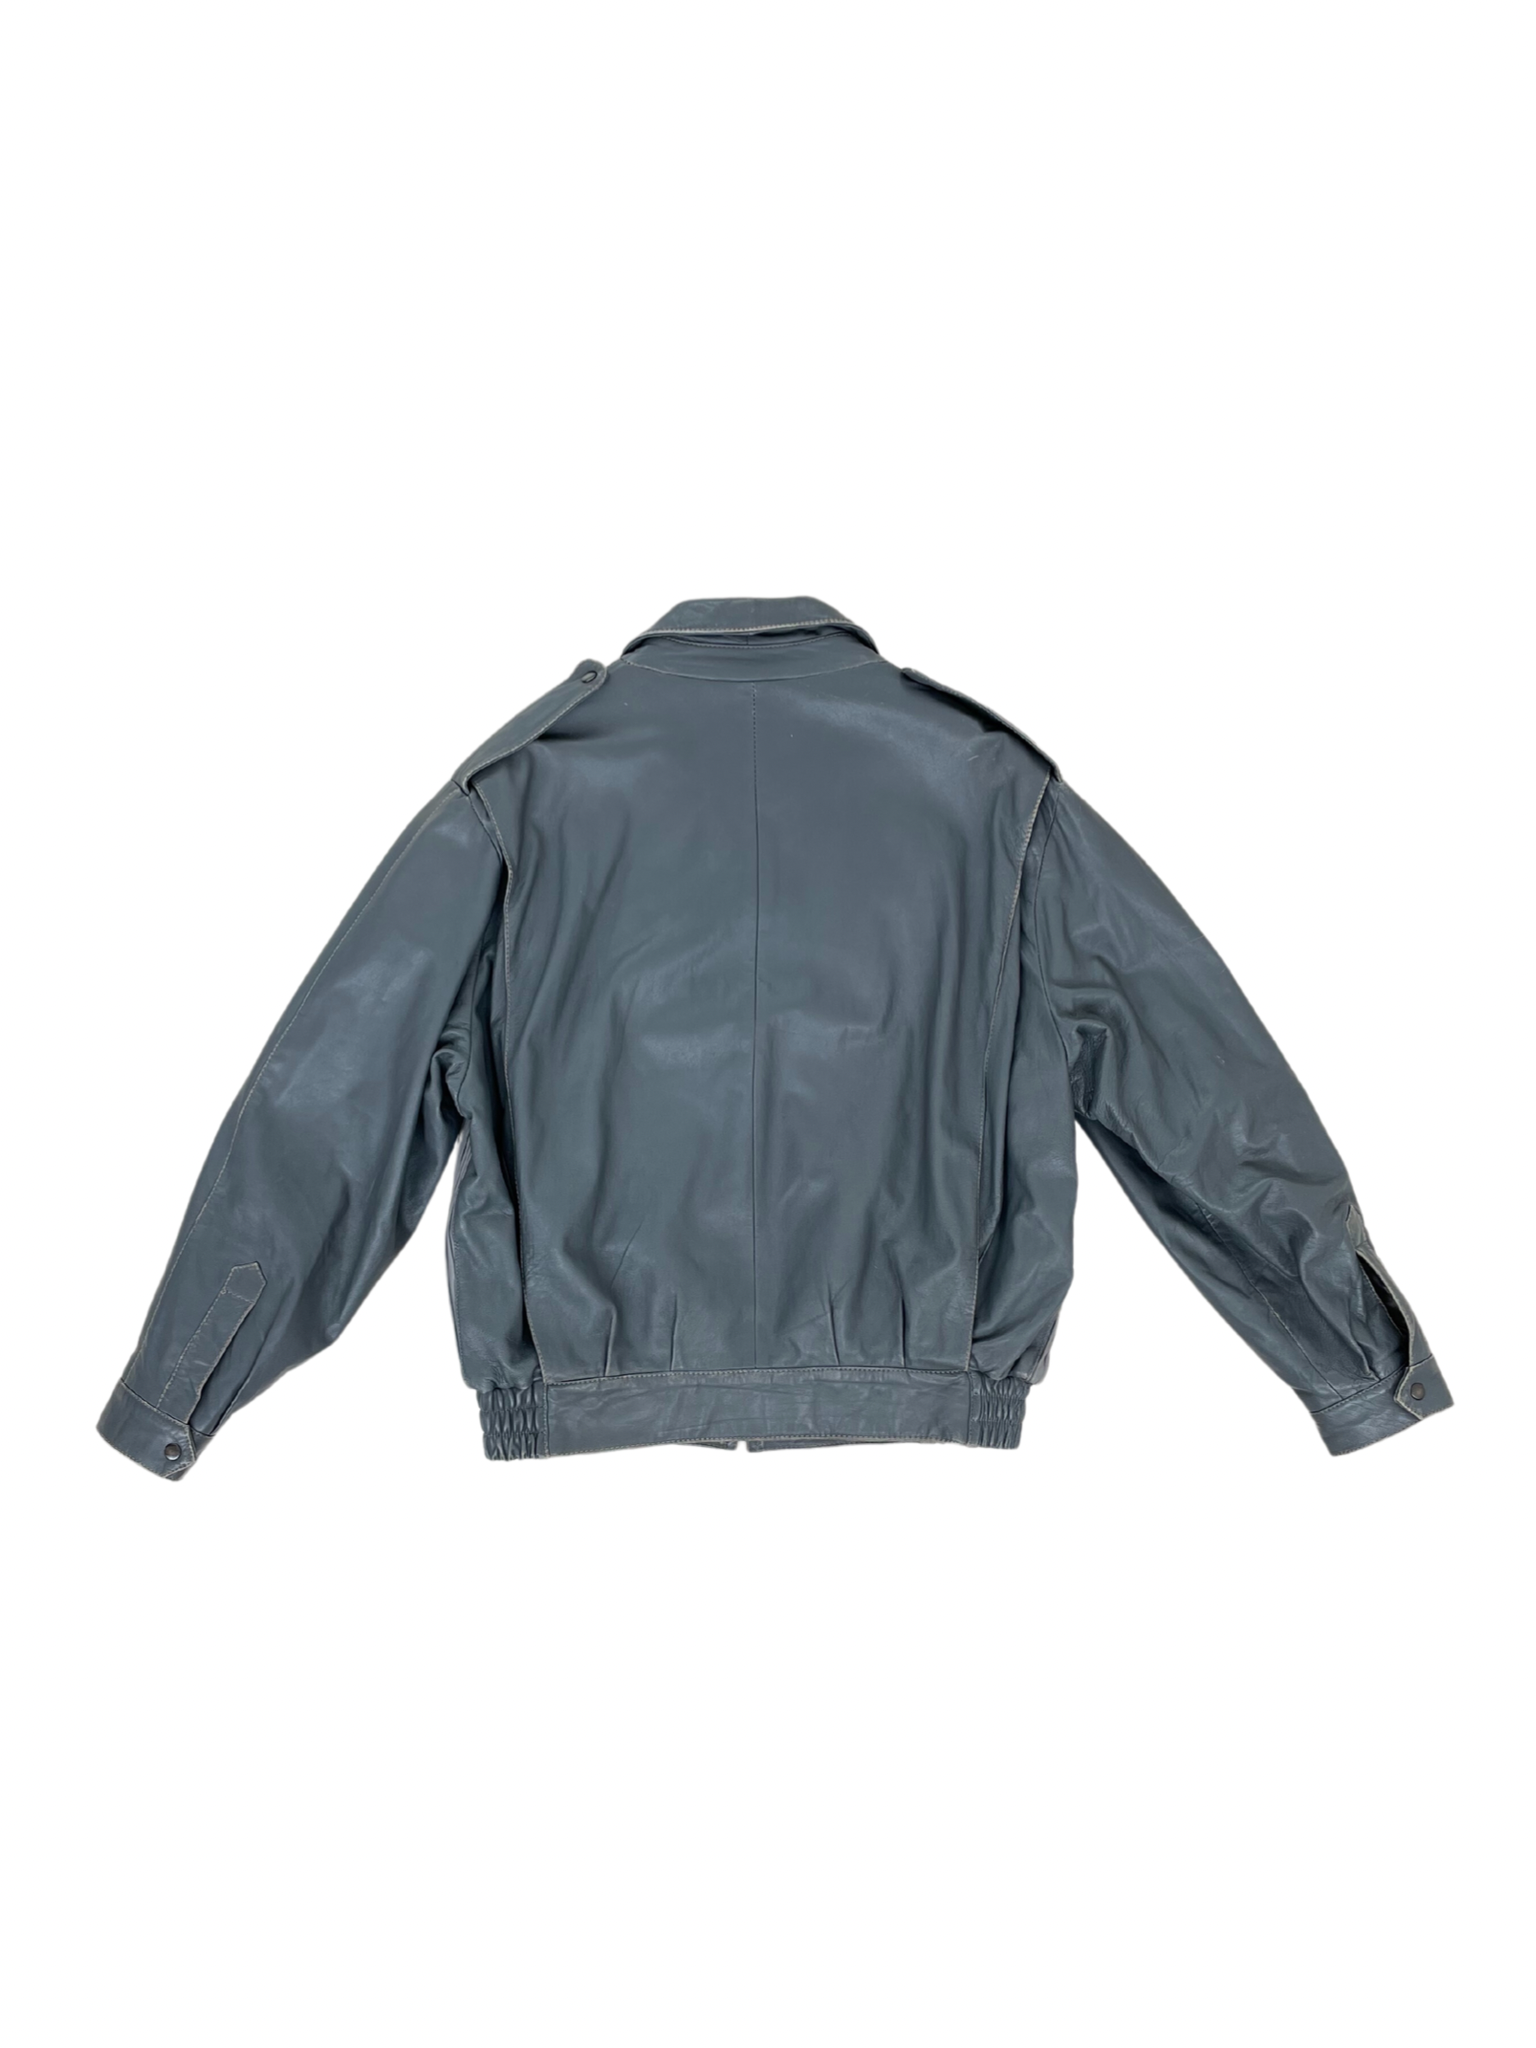 Pleated leather jacket